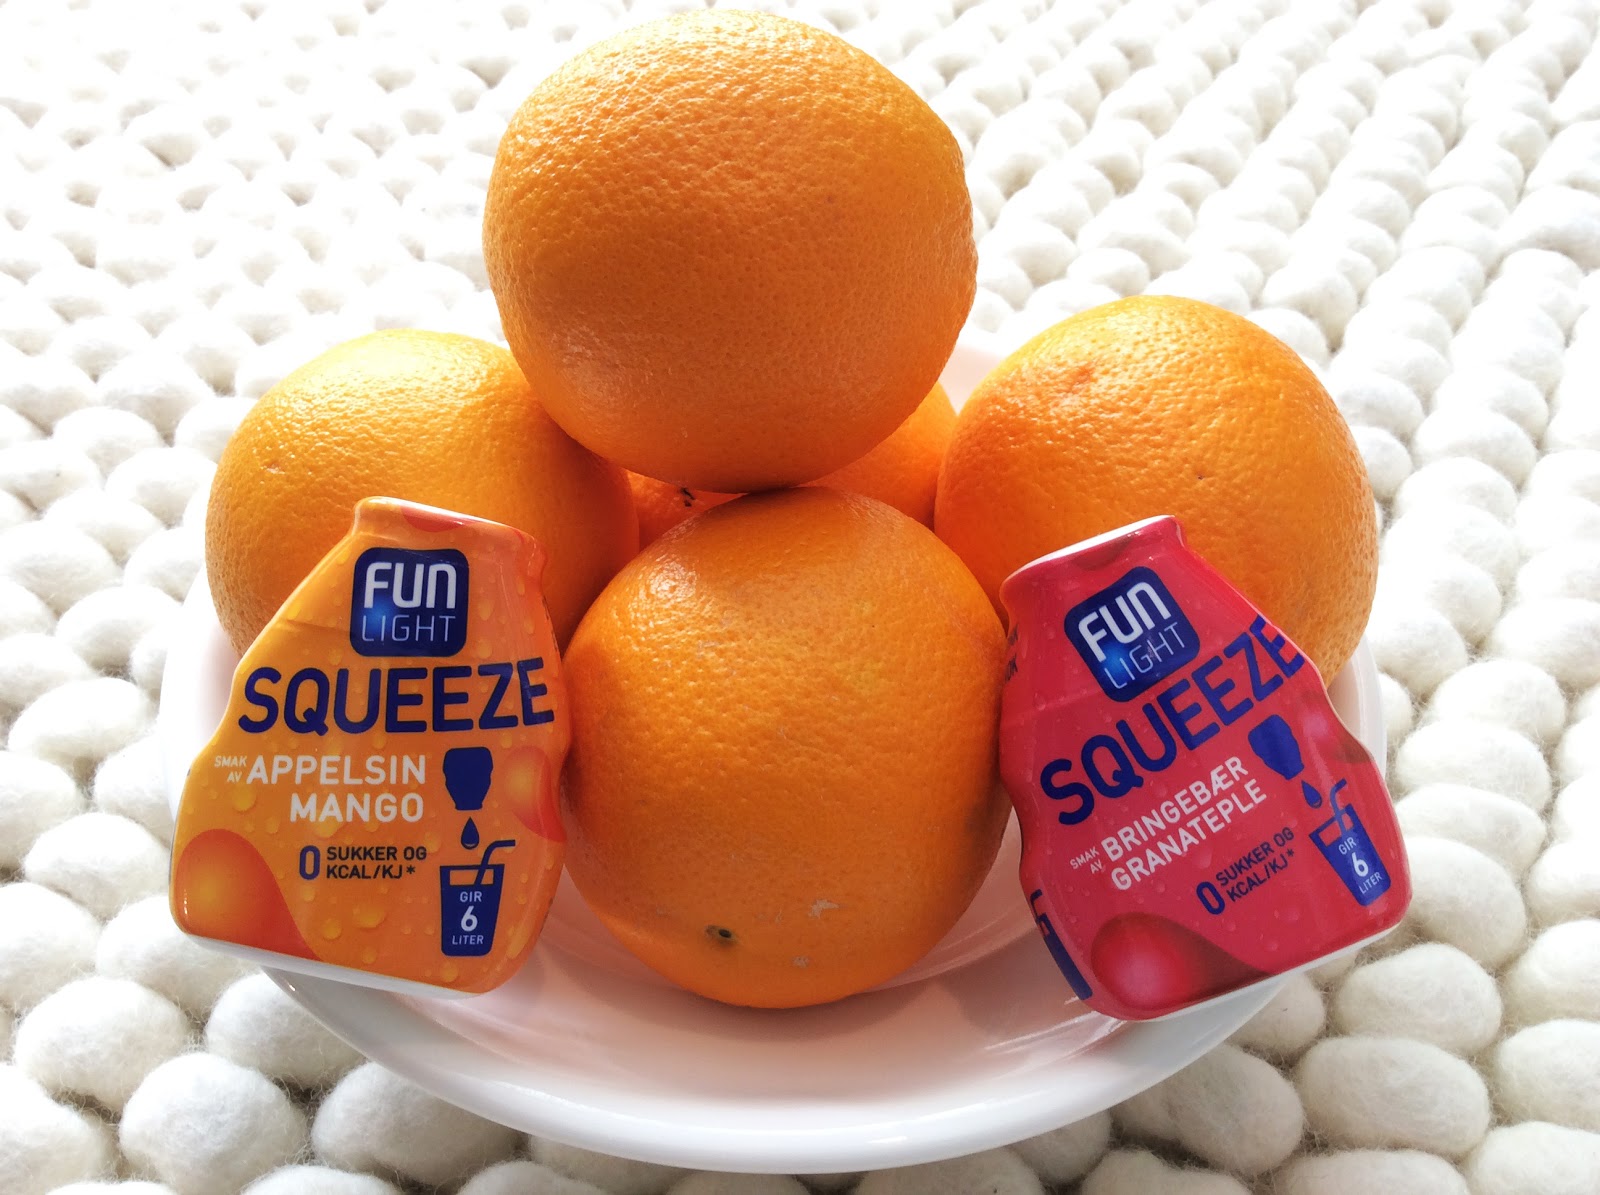 Fun+Light+Squeeze+appelsiner_Appelsin+og